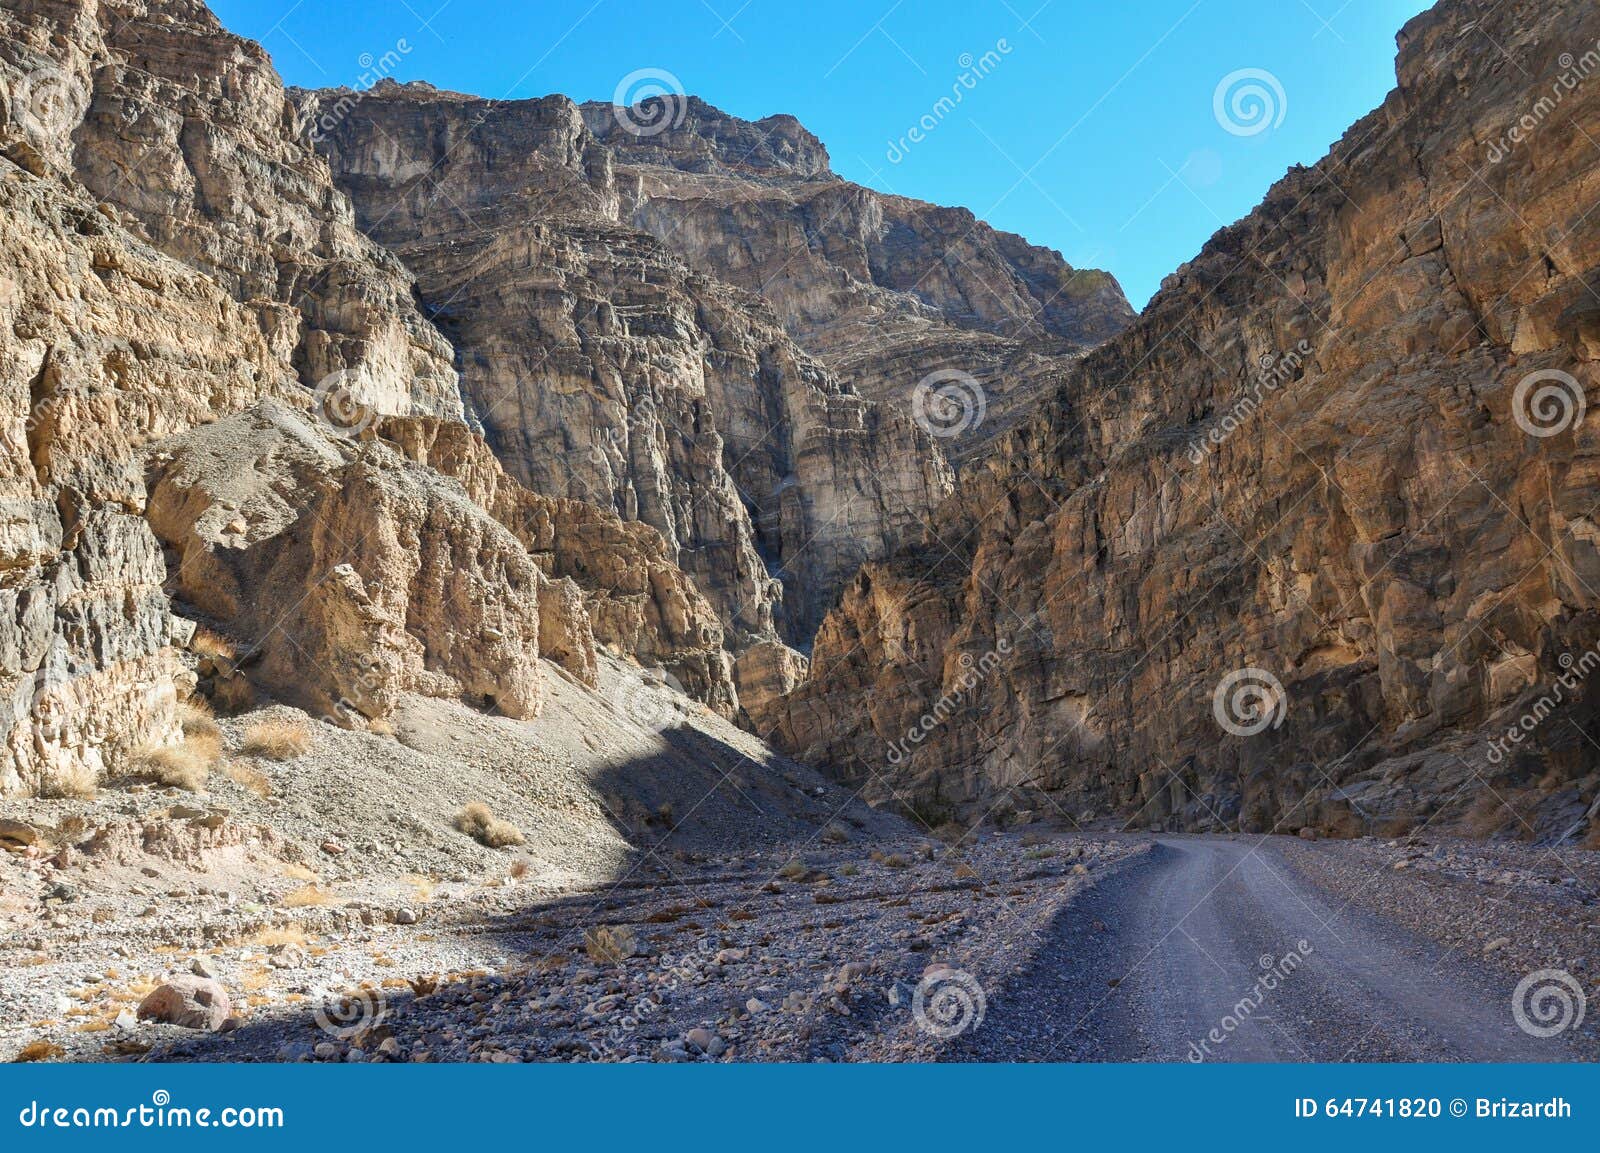 titus canyon, death valley national park, california, usa